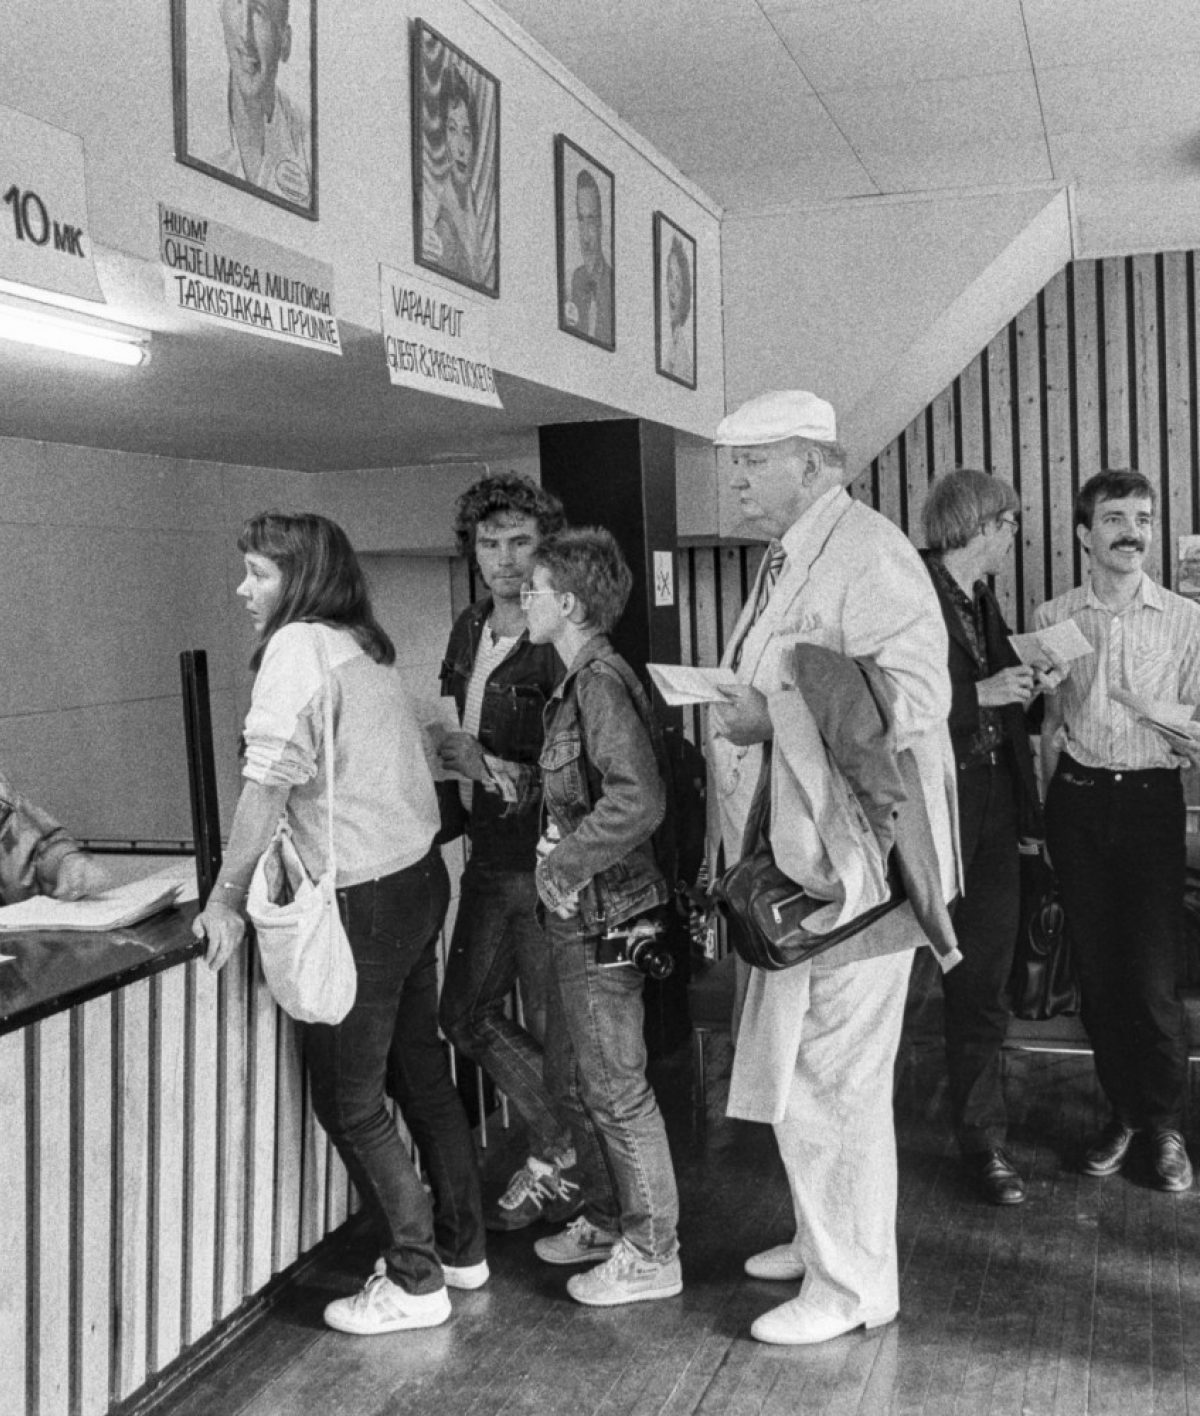 Biljettkön inför festivalens öppningsfilm Den vita renen på biografen Lapinsuu. År 1986 kostade en biobiljett 10 mark. Foto: Jarmo Kontiainen / Kaleva / JOKA / Museiverket